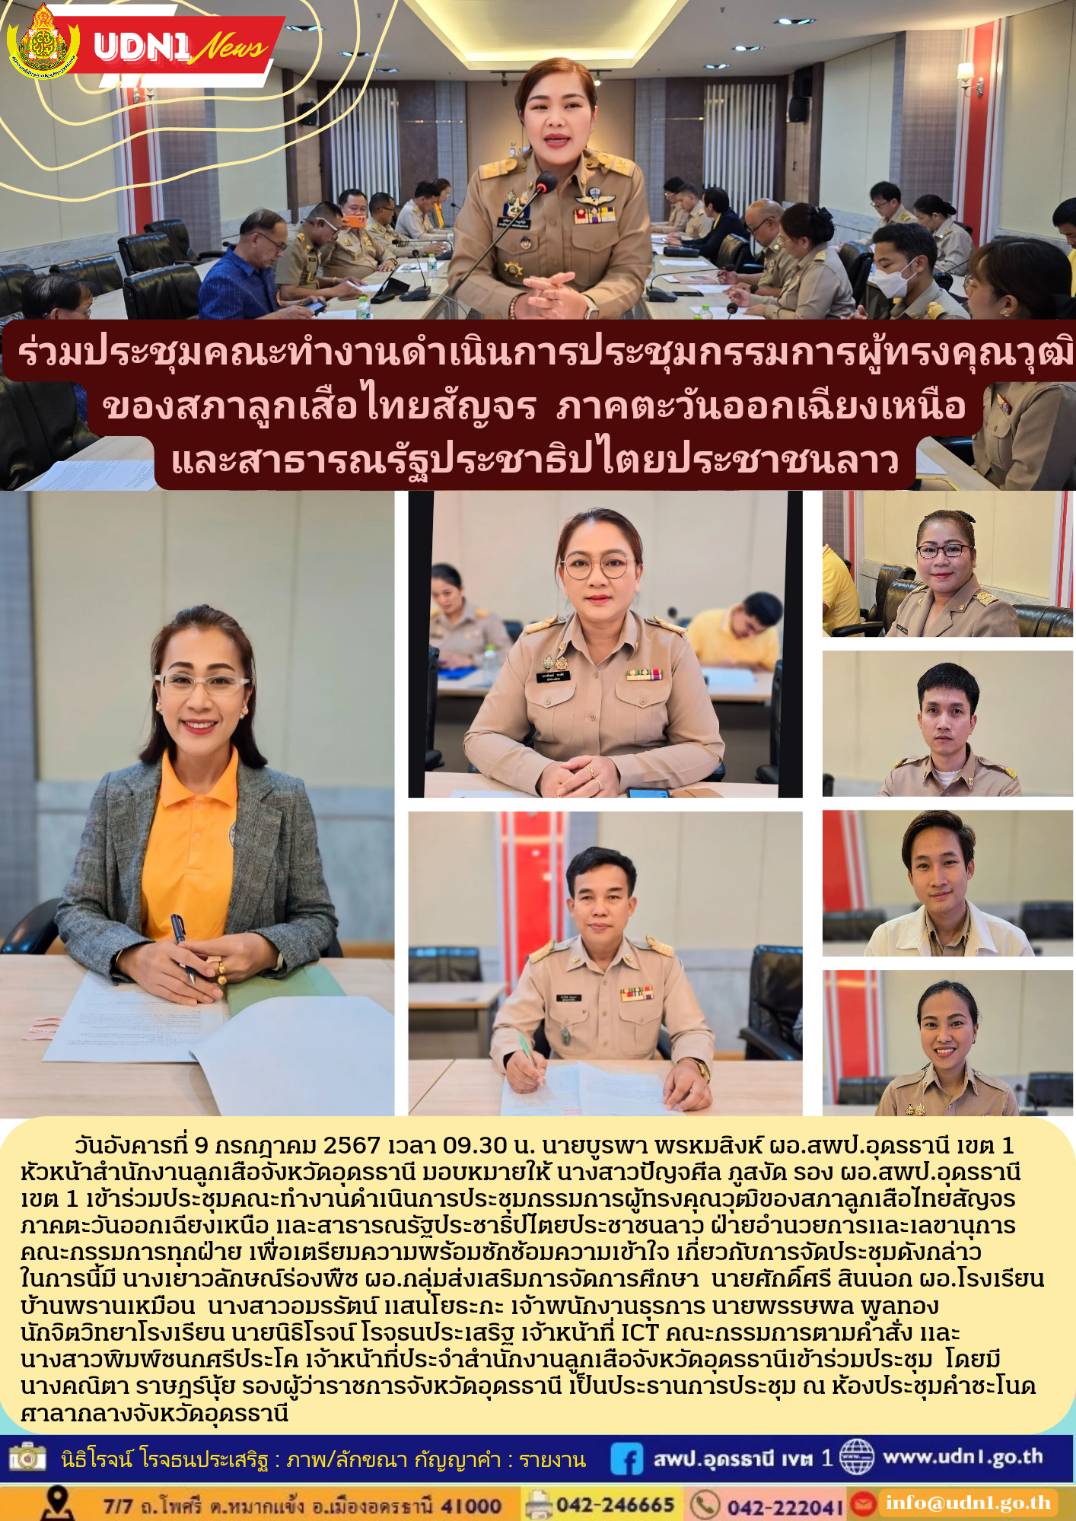 ร่วมประชุมคณะทำงานดำเนินการประชุมกรรมการผู้ทรงคุณวุฒิของสภาลูกเสือไทยสัญจร ภาคตะวันออกเฉียงเหนือและสาธารณรัฐประชาธิปไตยประชาชนลาว